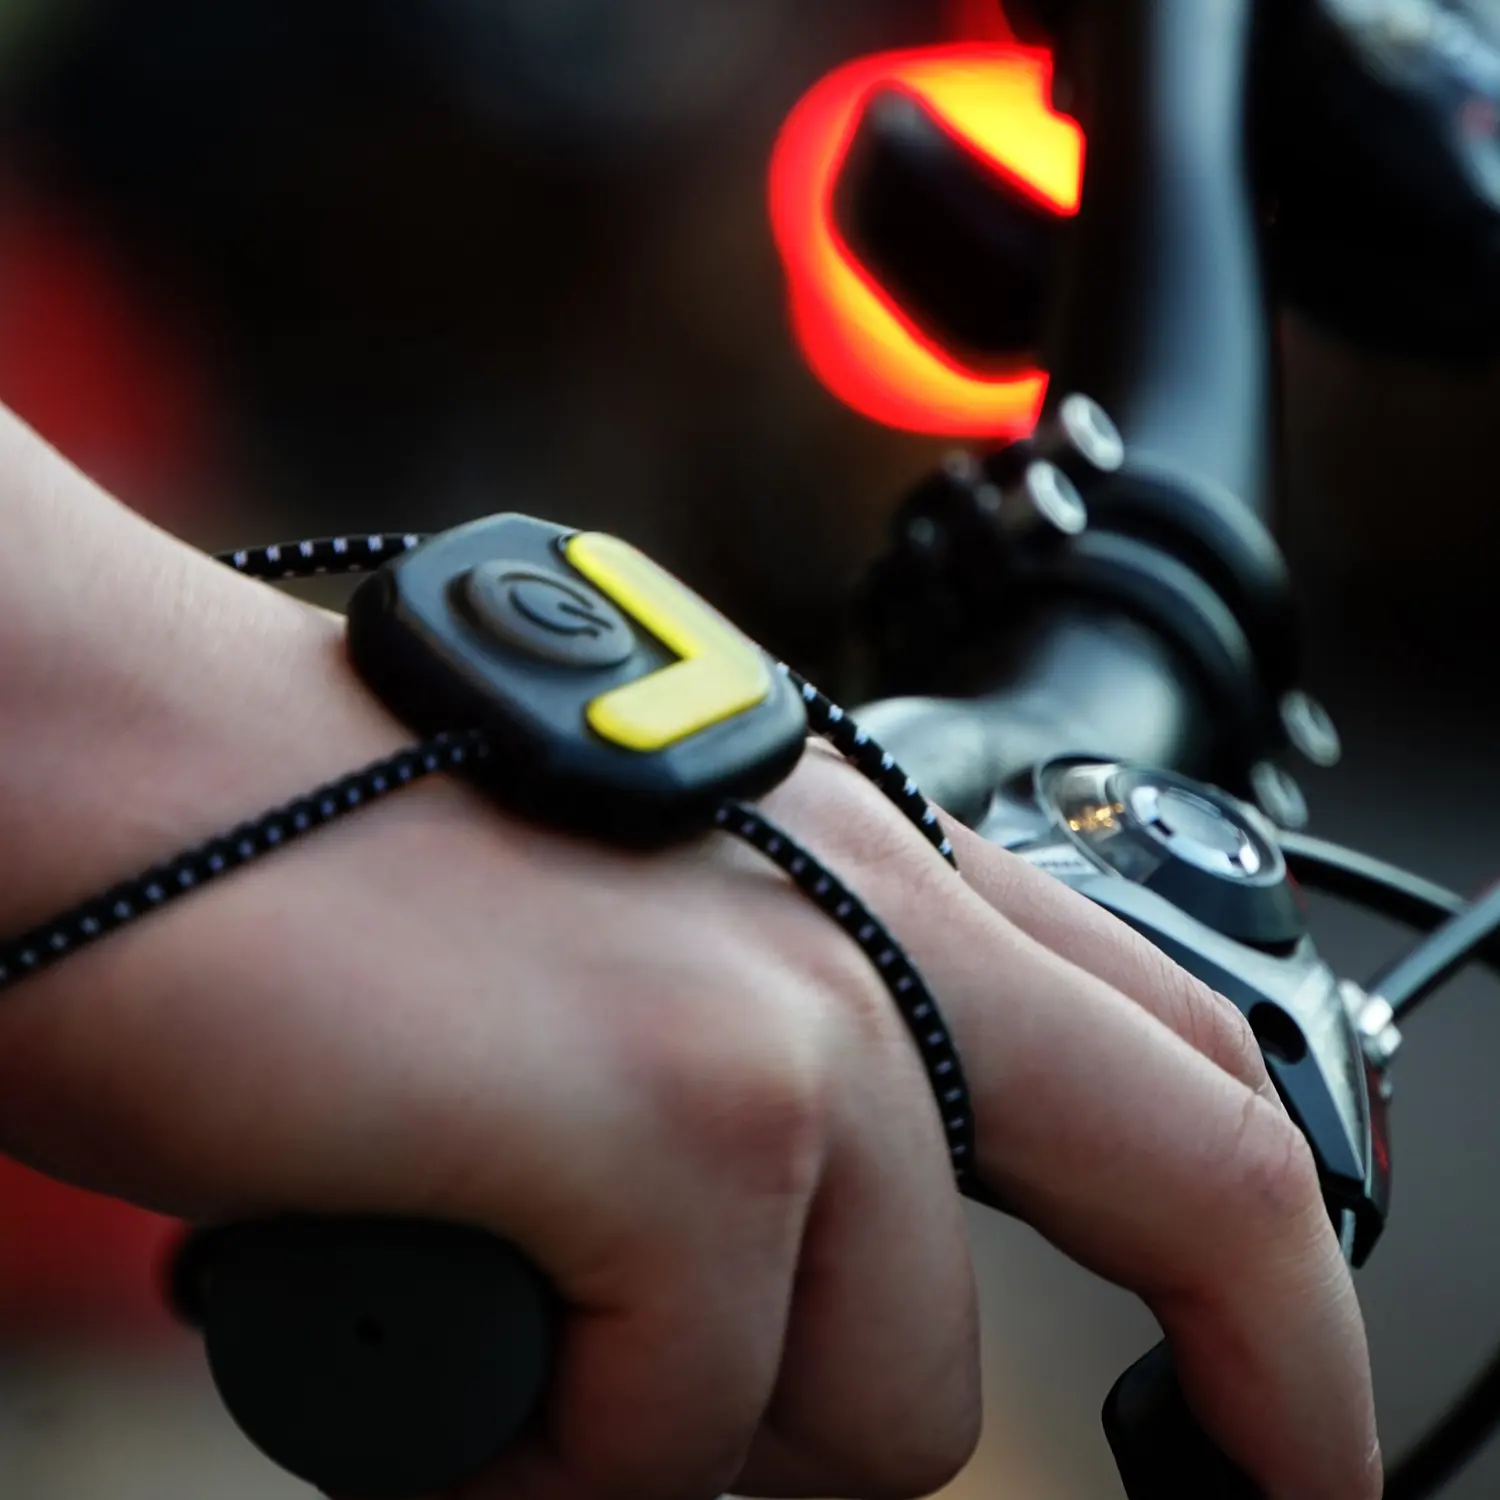 New Arrival 2021 Smart Motion Sensor LED Indicator Light For Bike